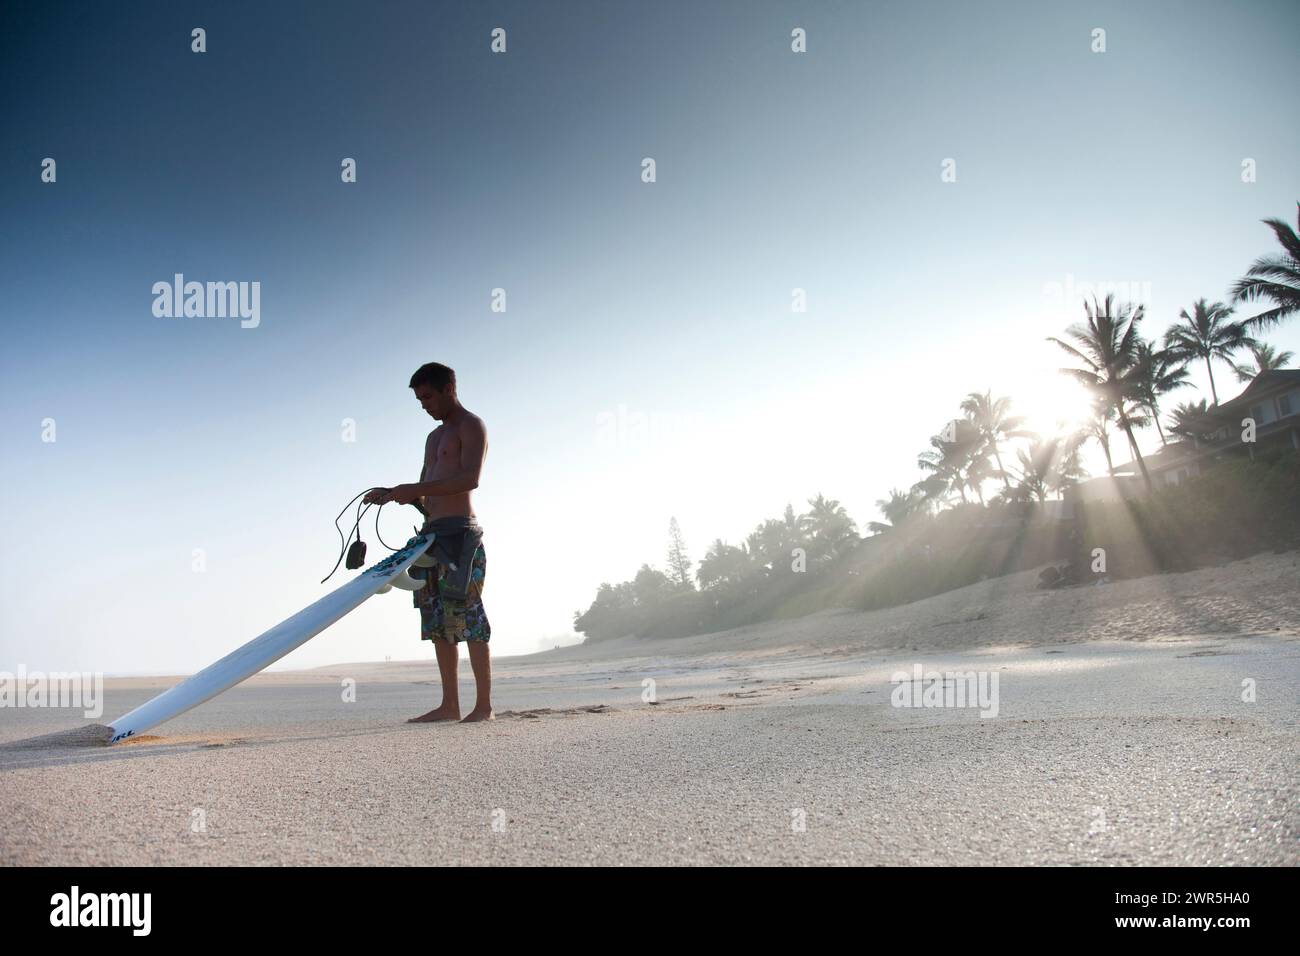 Ein junger Mann, der an einem verlassenen Strand steht und im Begriff ist, surfen zu gehen. North Shore, Oahu, Hawaii Stockfoto